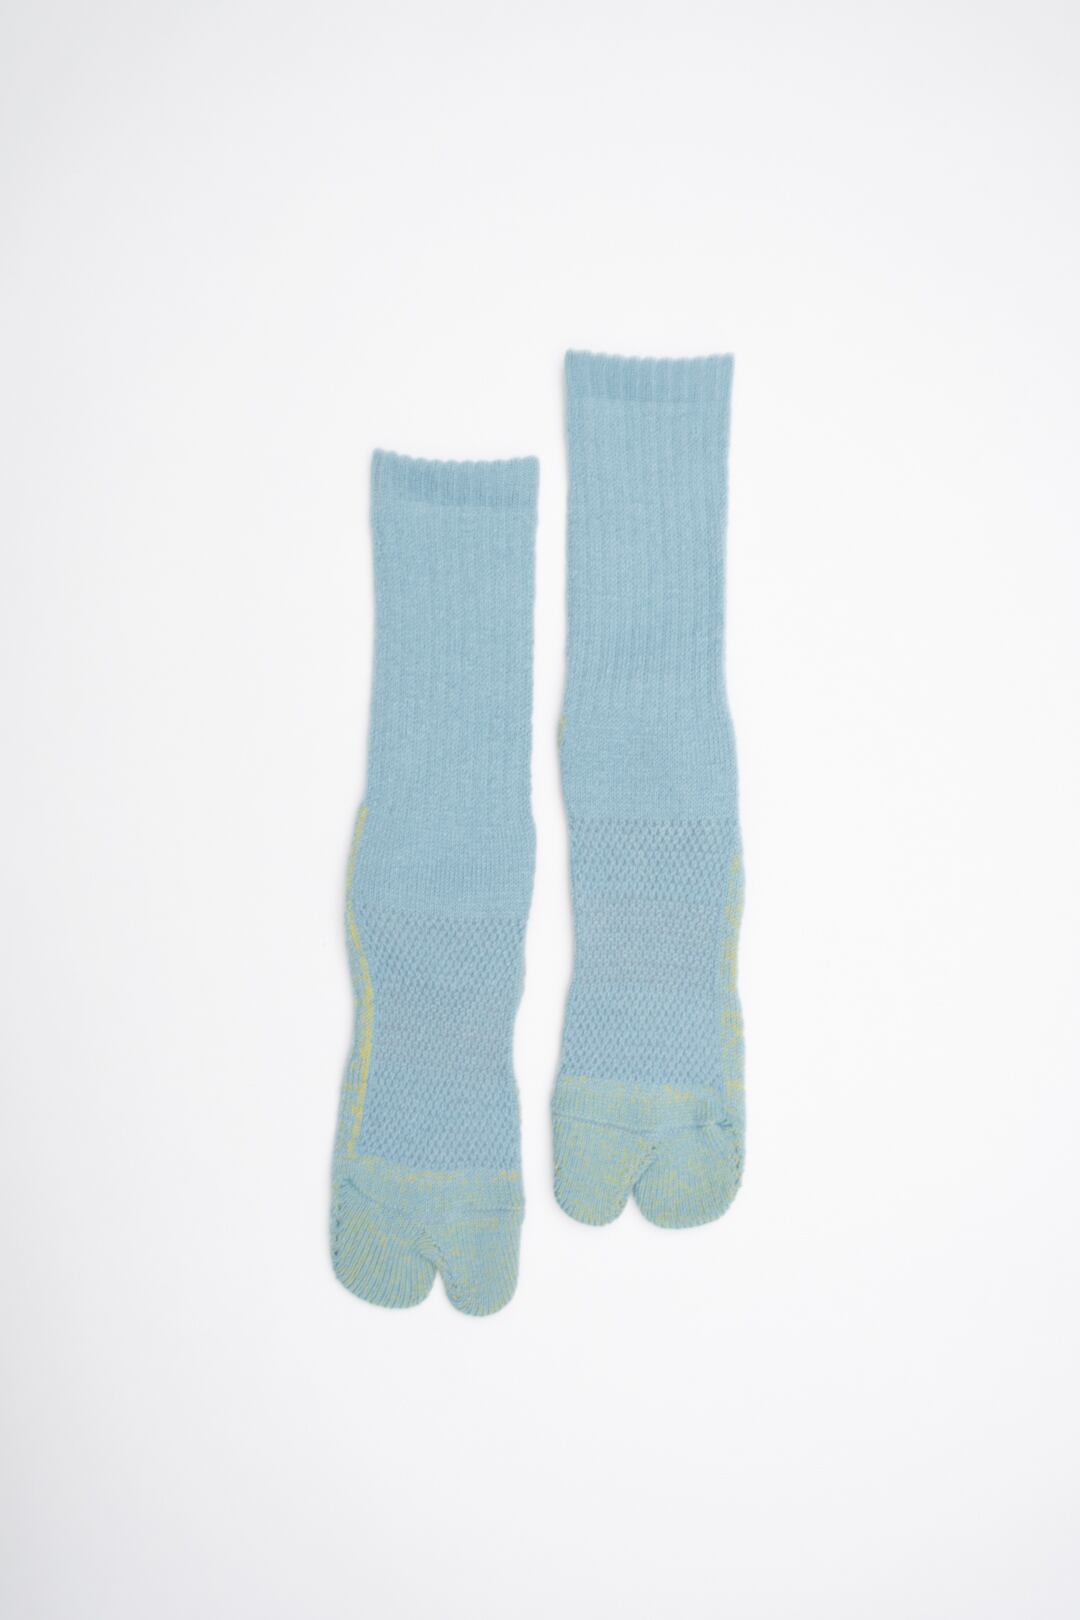 84N Wool Long  Socks(Blue)